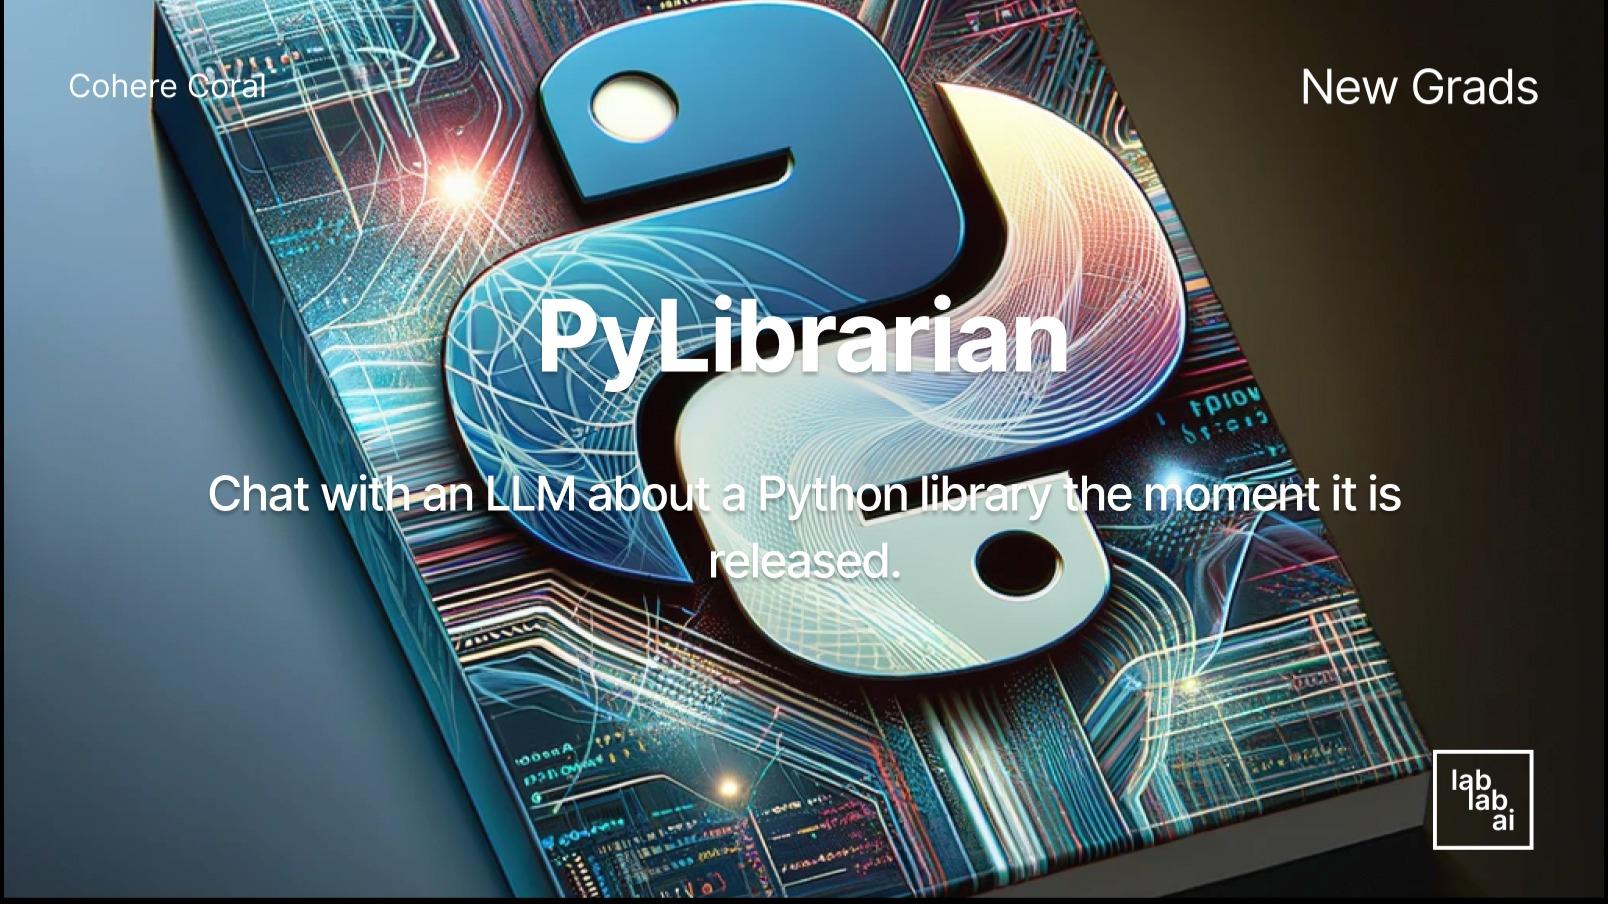 PyLibrarian